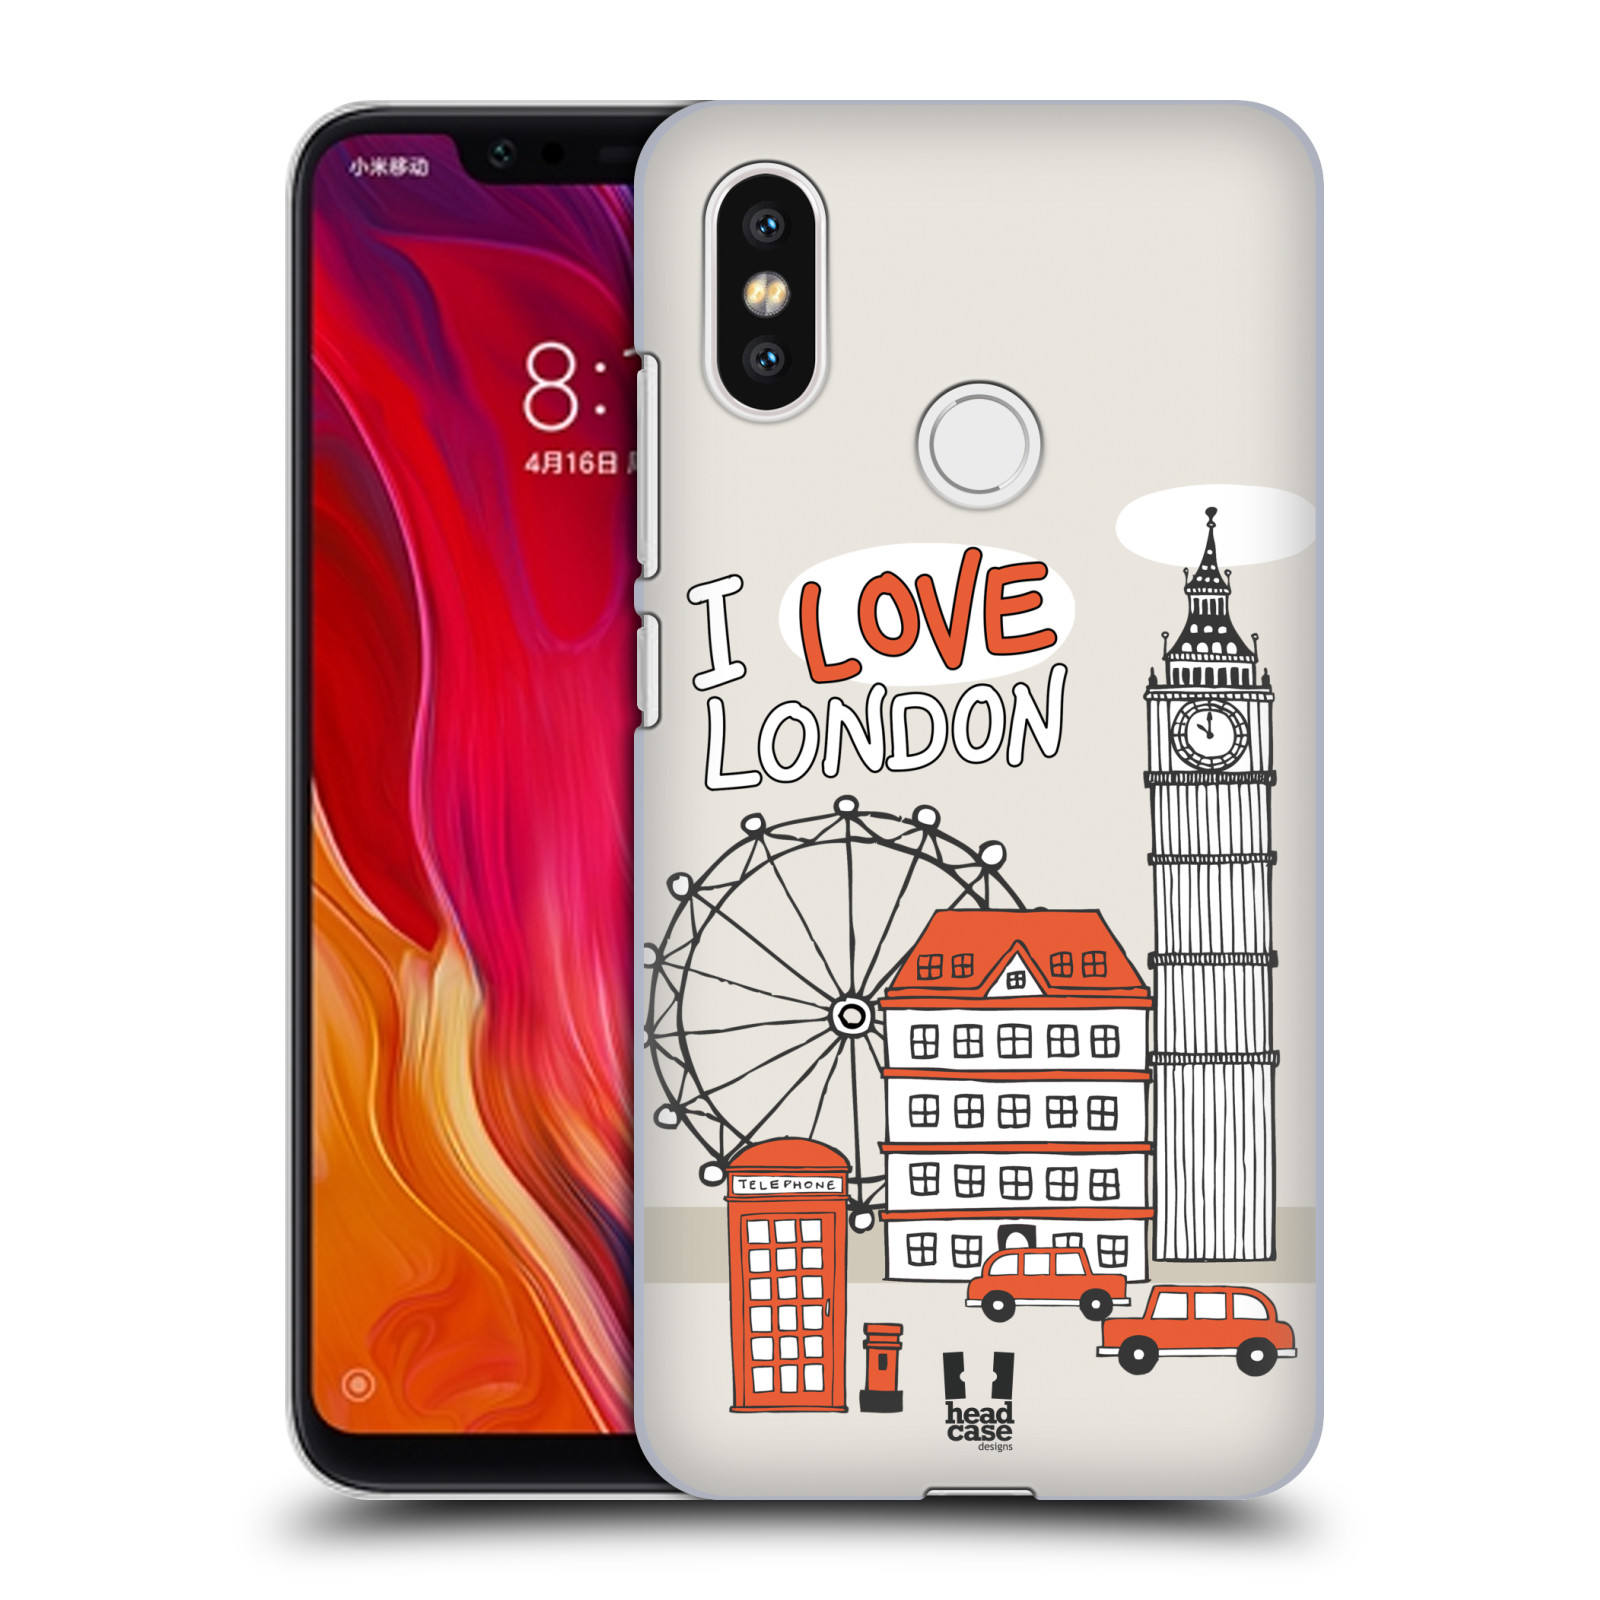 HEAD CASE plastový obal na mobil Xiaomi Mi 8 vzor Kreslená městečka ČERVENÁ, Anglie, Londýn, I LOVE LONDON